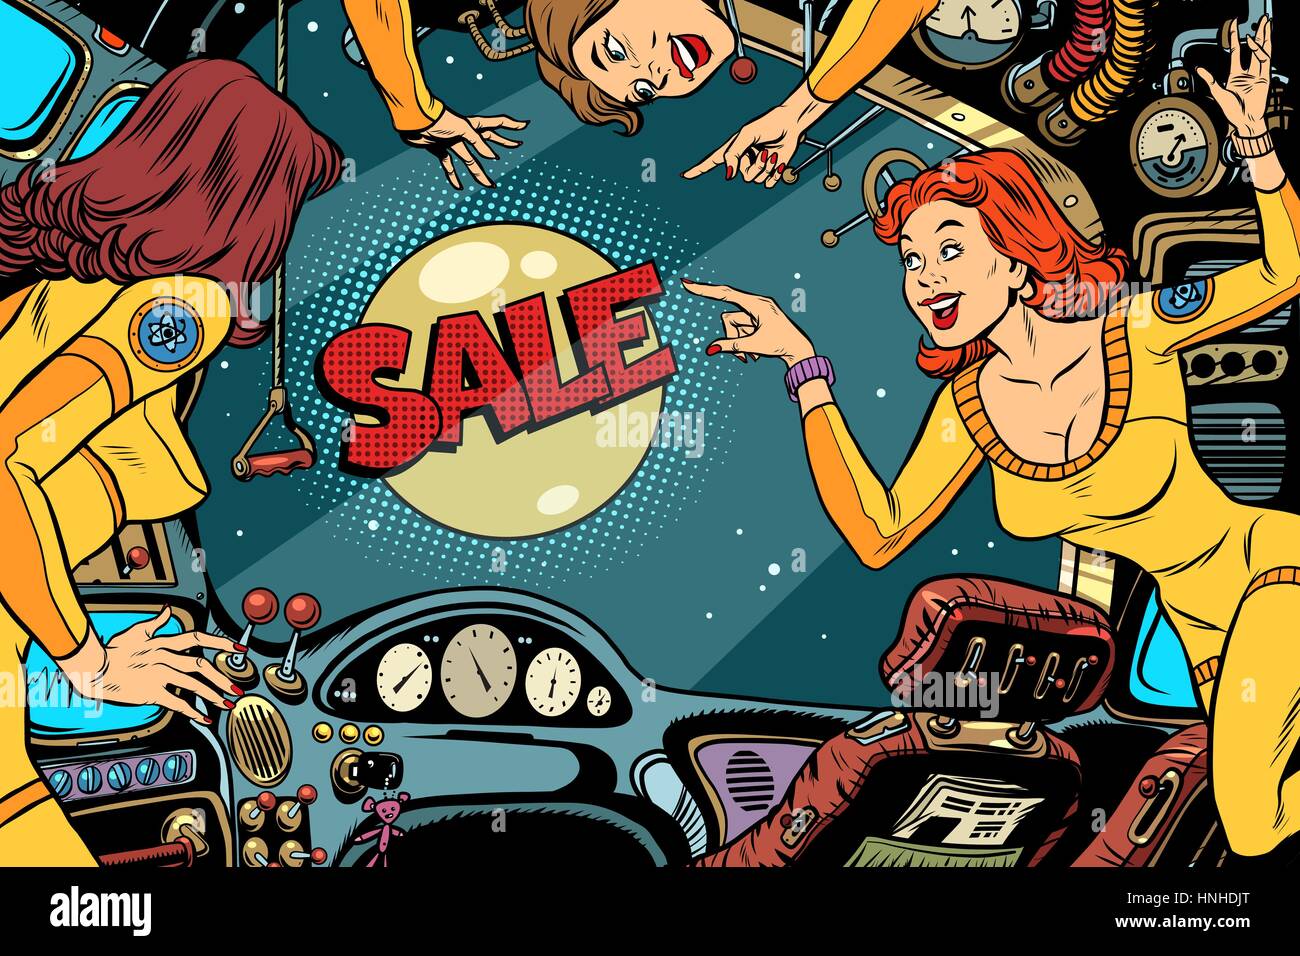 Verkauf und Frauen Astronauten in der Kabine eines Raumschiffs schaut aus dem Fenster. Vintage Comic Pop Art Retro-farbigen illustration Stock Vektor